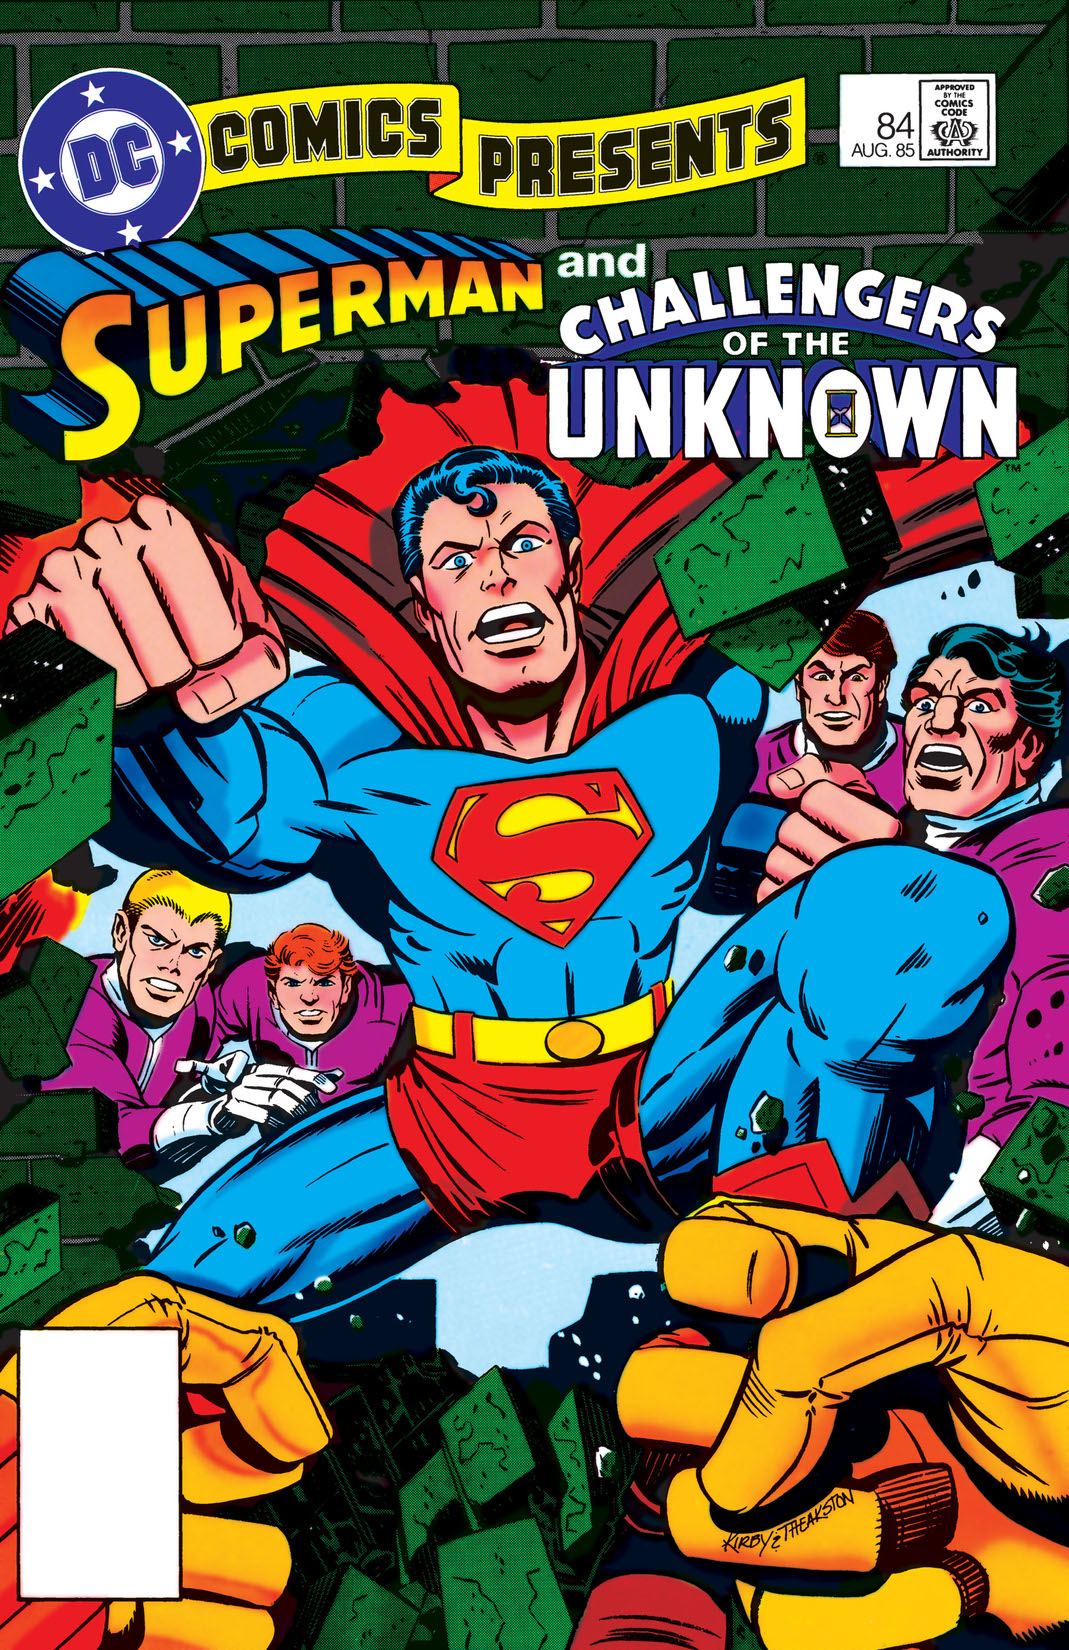 DC Comics Presents (1978-1986) #84 preview images